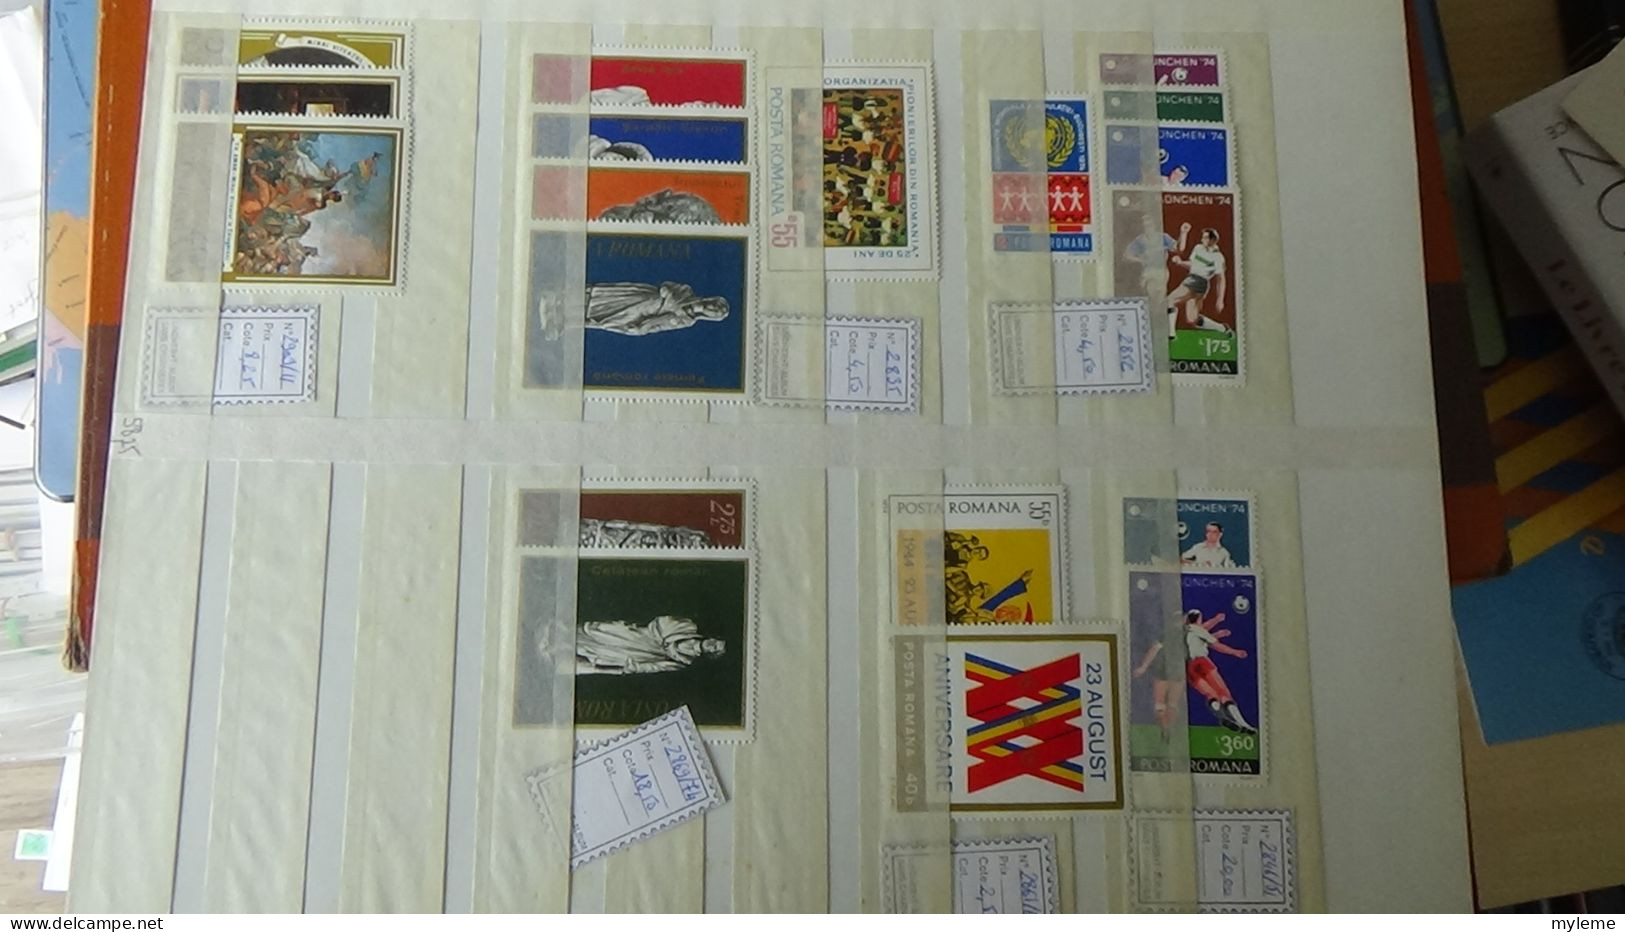 BG5 Ensemble de timbres de divers pays + plaquette de timbres ** de France Cote très sympa. A saisir !!!